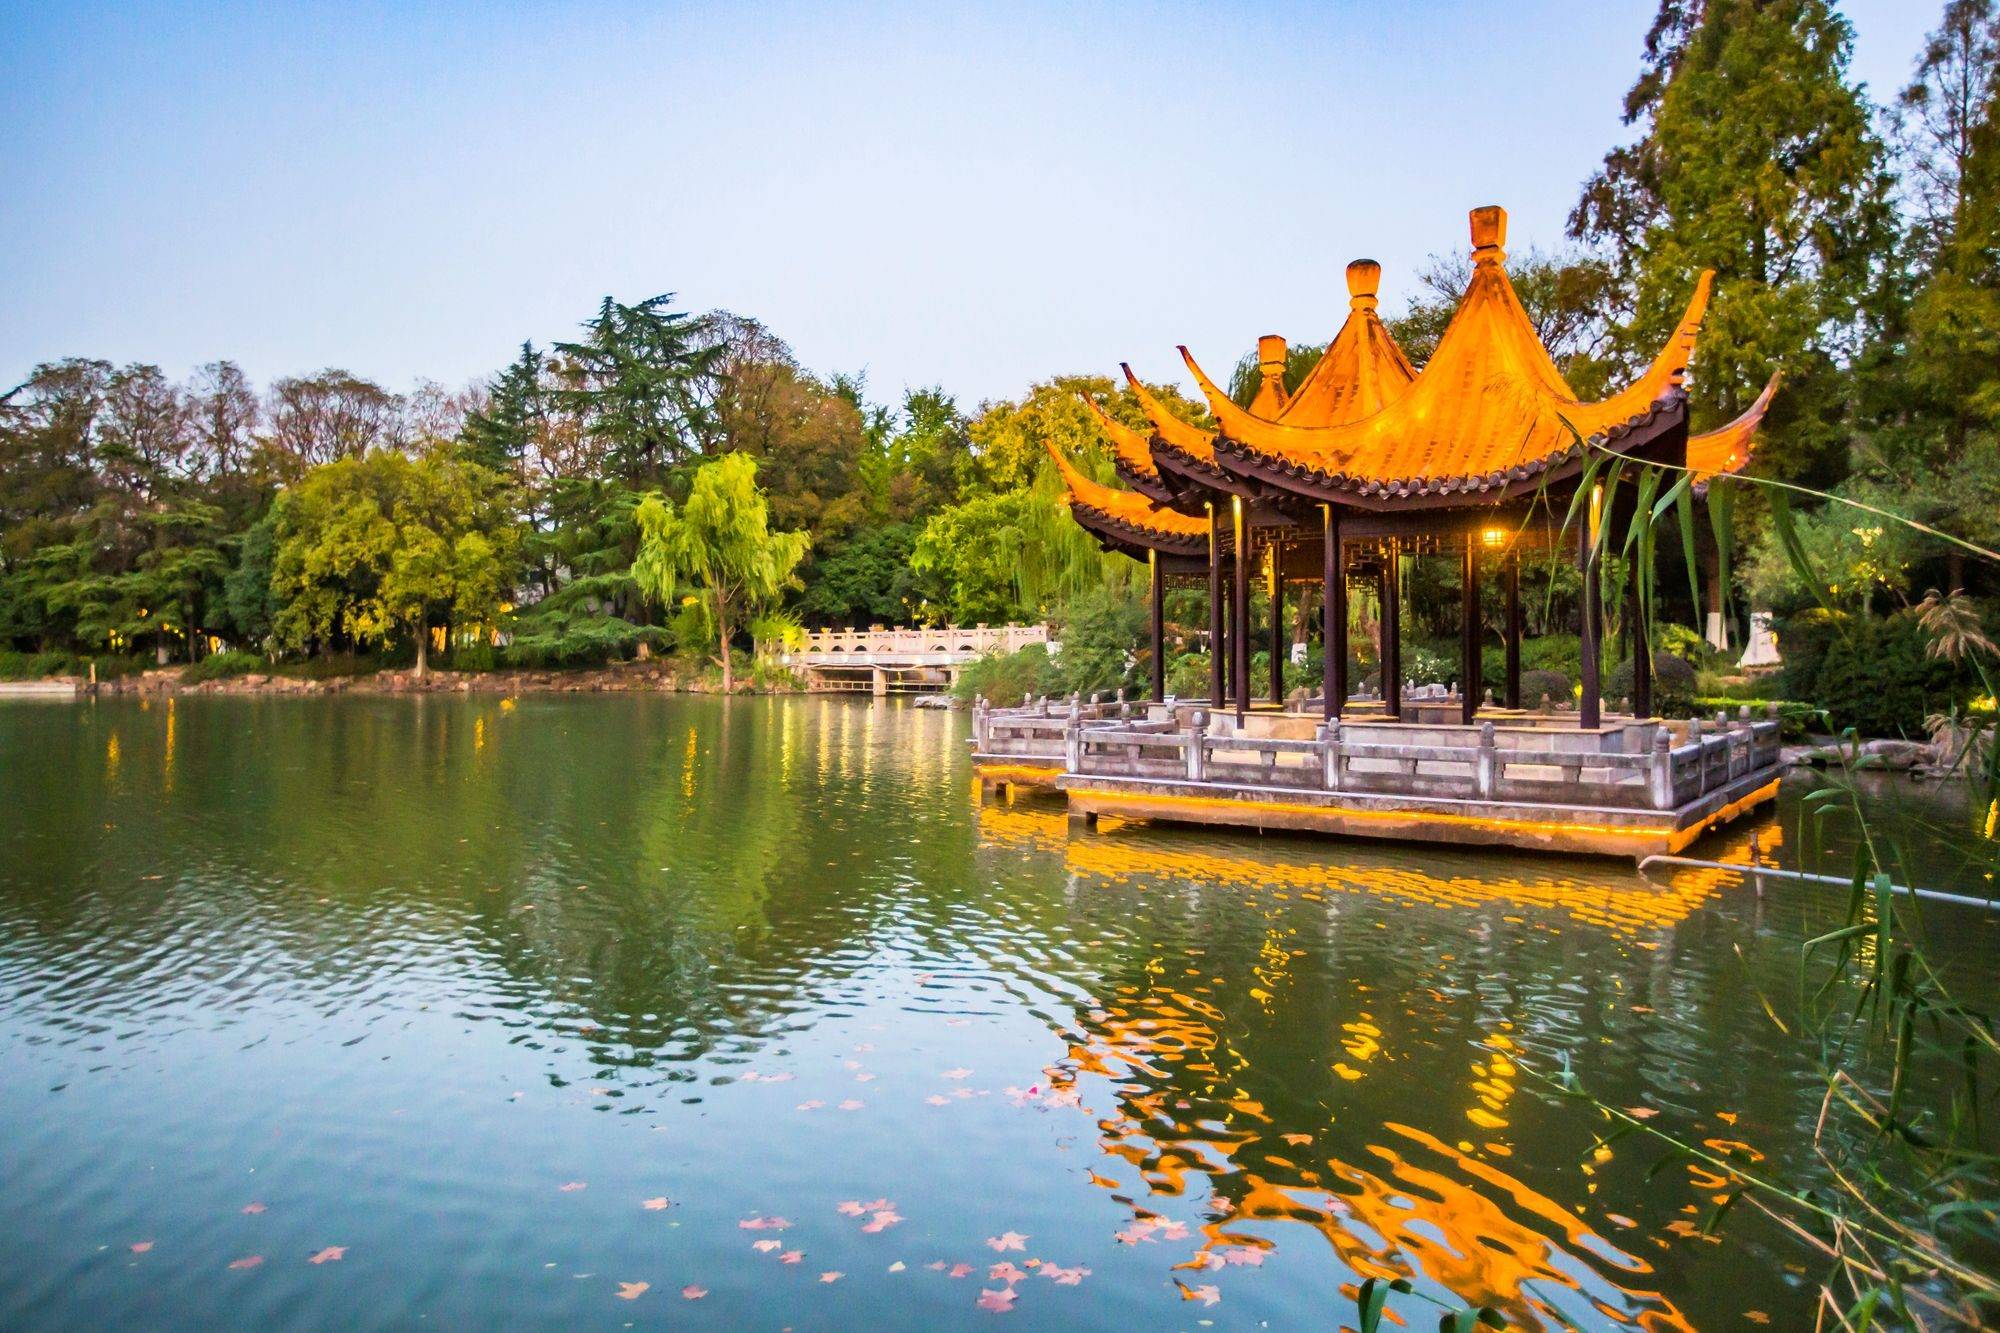 江苏常州有一座红梅公园,环境优美,植被众多,是休闲散心好去处